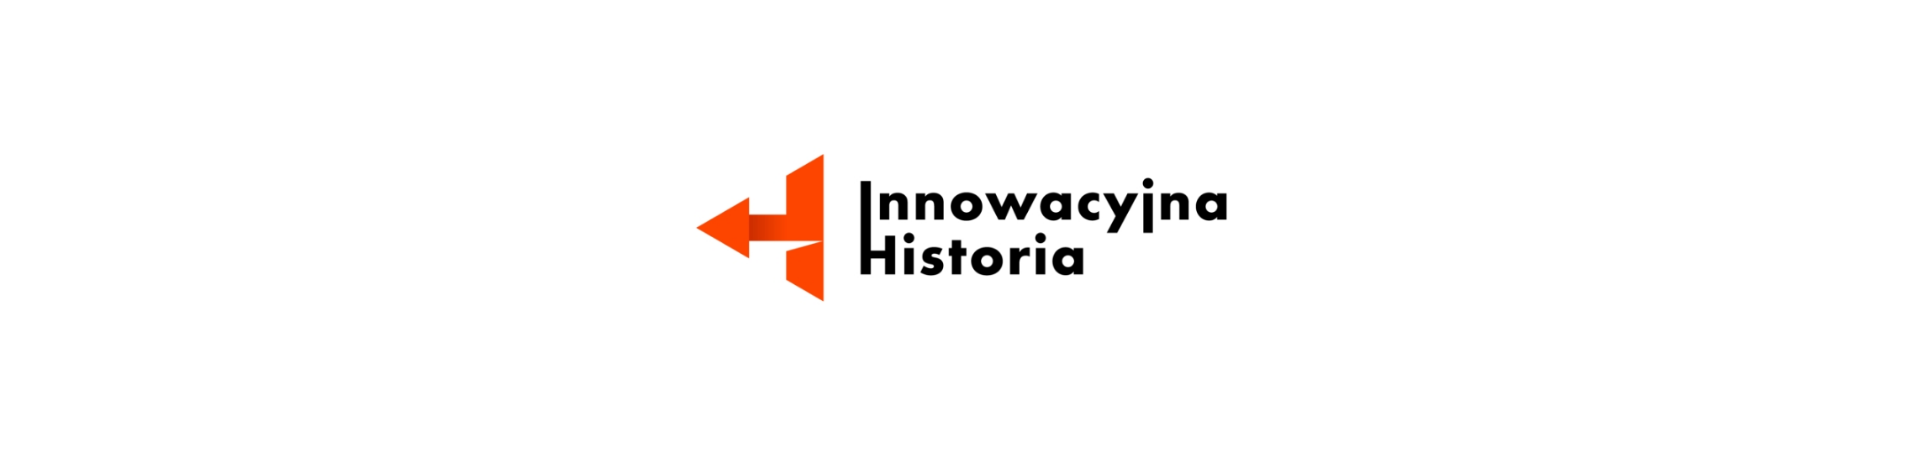 logo pomarańczowa strzałka w kształcie litery H skierowana w lewo i napis Innowacyjna historia